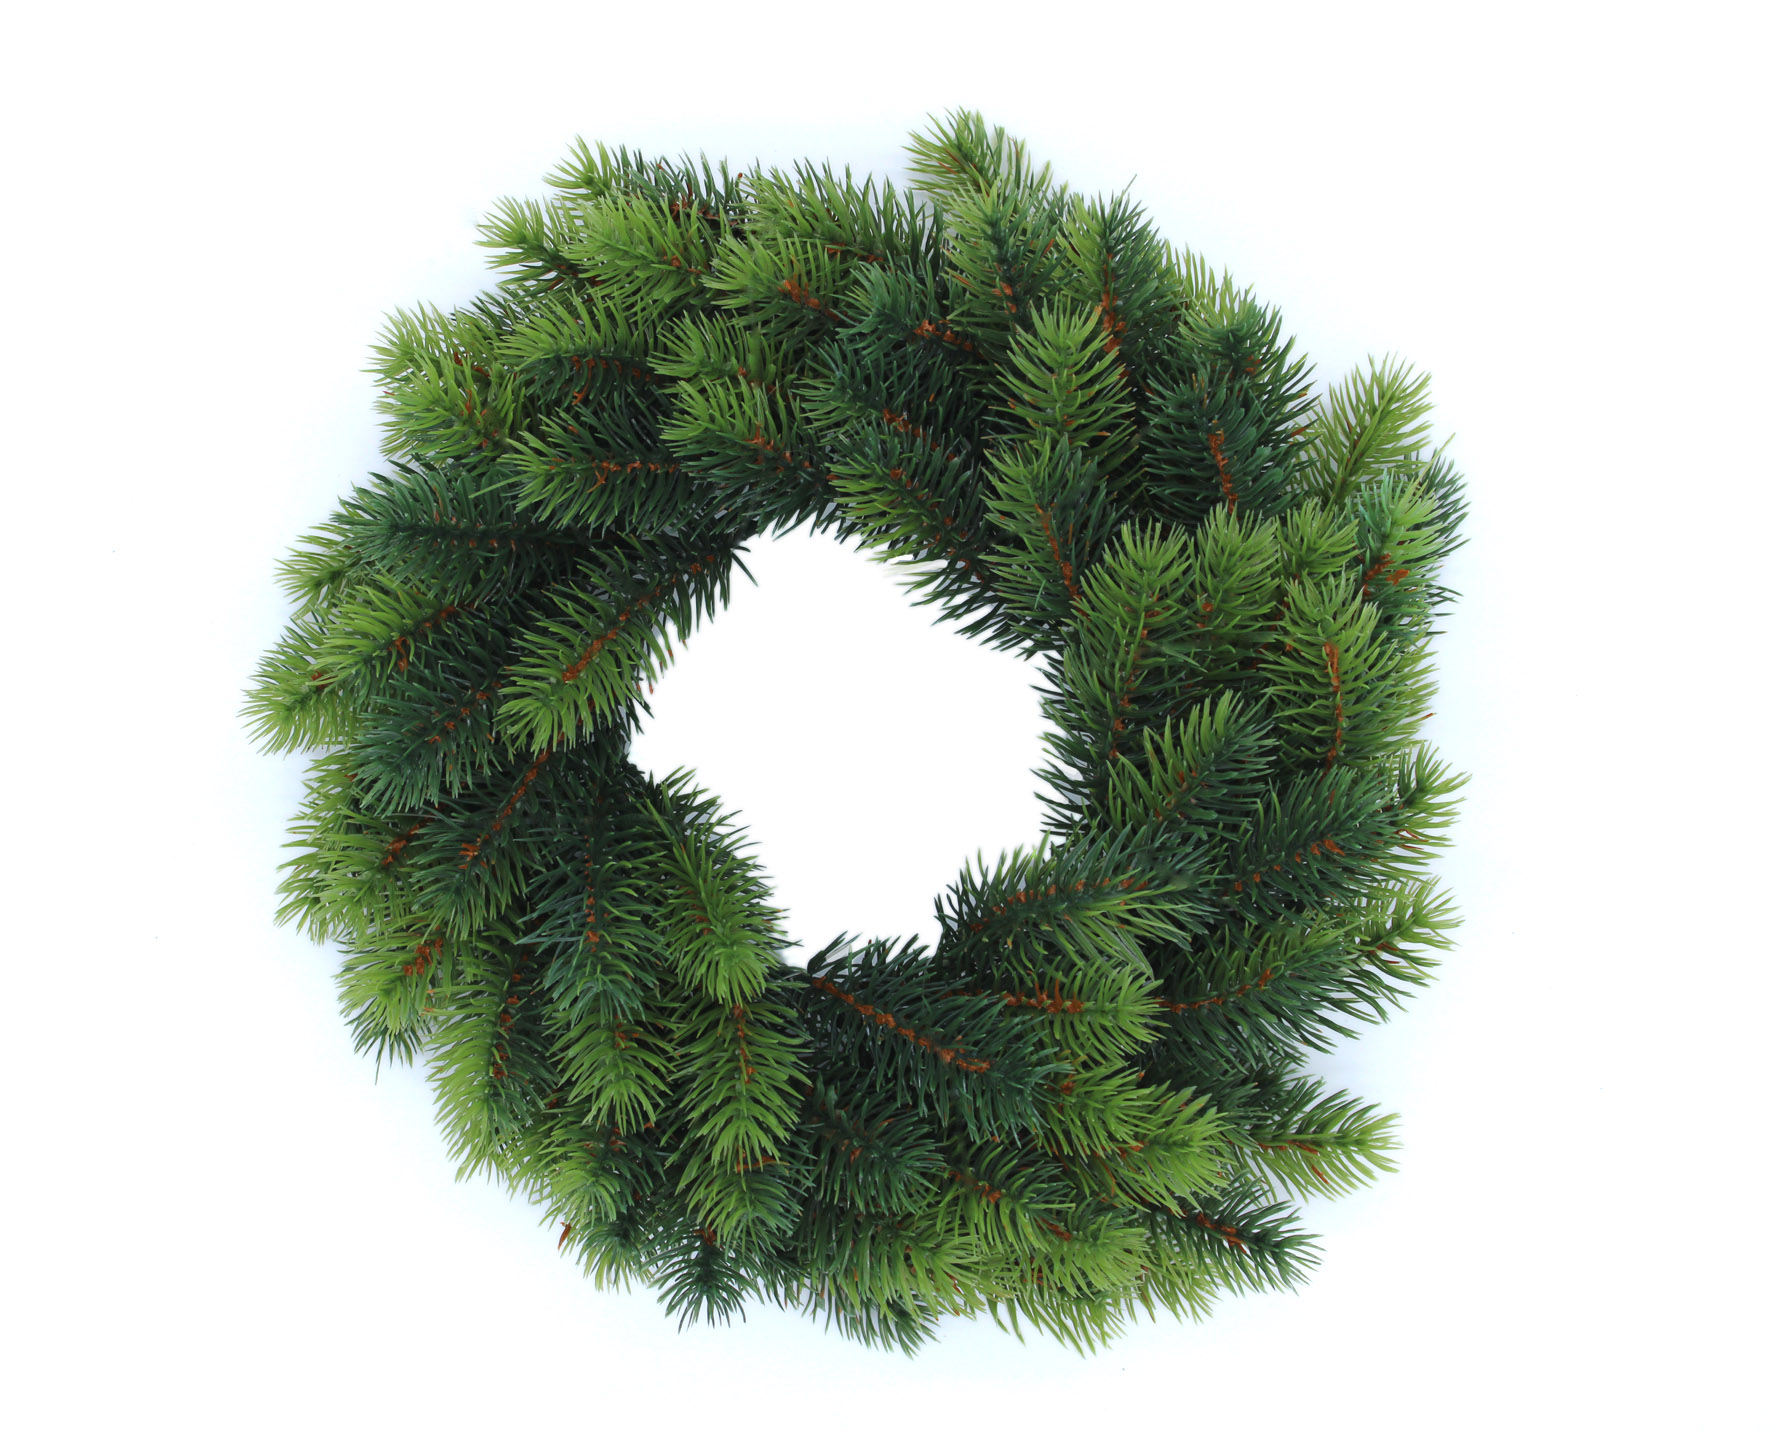  Künstlicher Edel Tannenkranz grün - 32 cm - Weihnachts Türkranz mit naturgetreuen Tannenzweigen